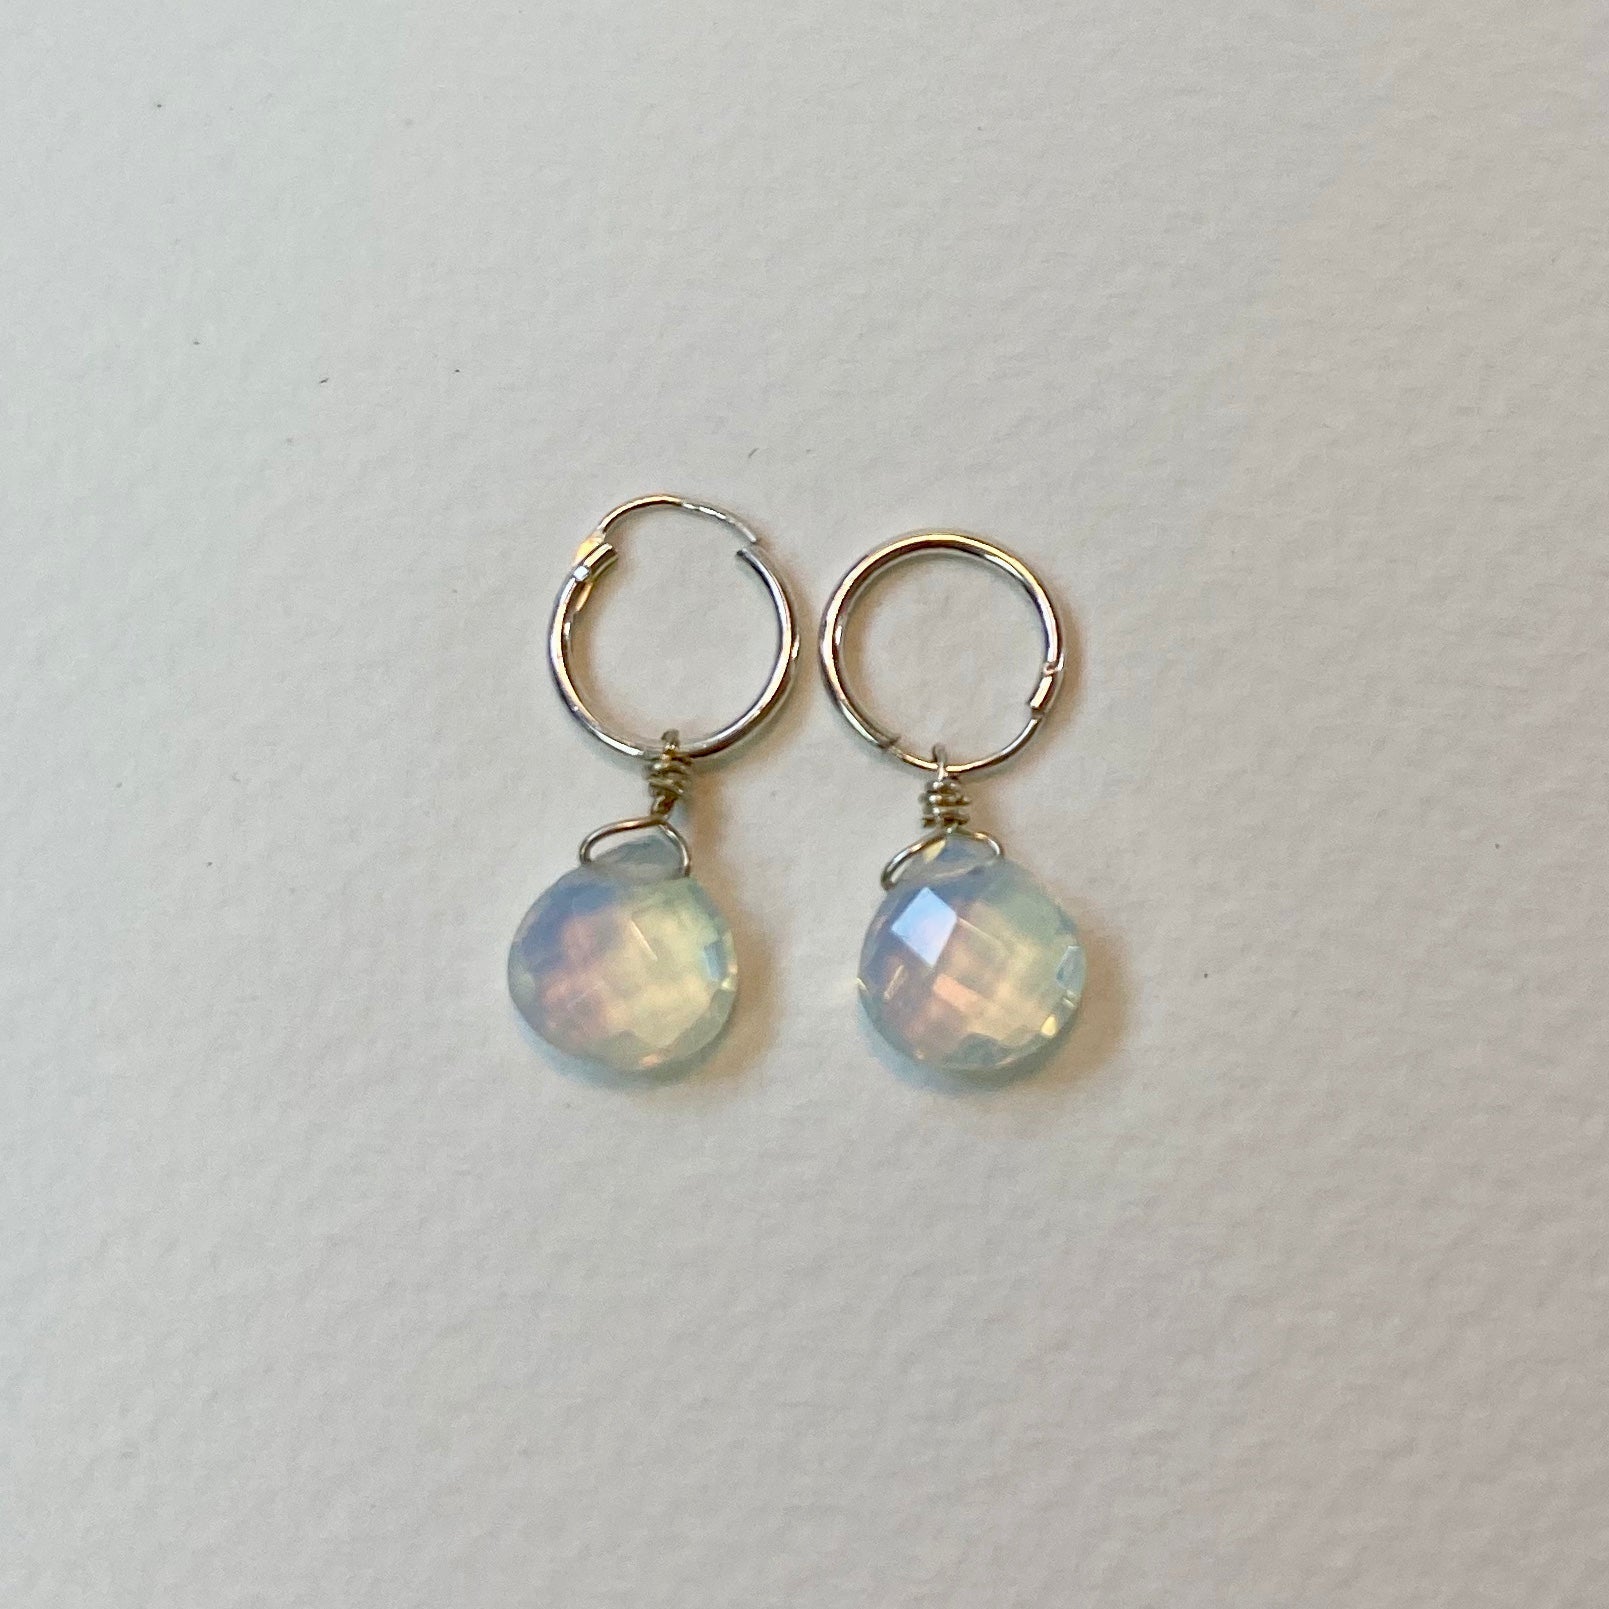 Opalite Silver Earrings - The Nancy Smillie Shop - Art, Jewellery & Designer Gifts Glasgow